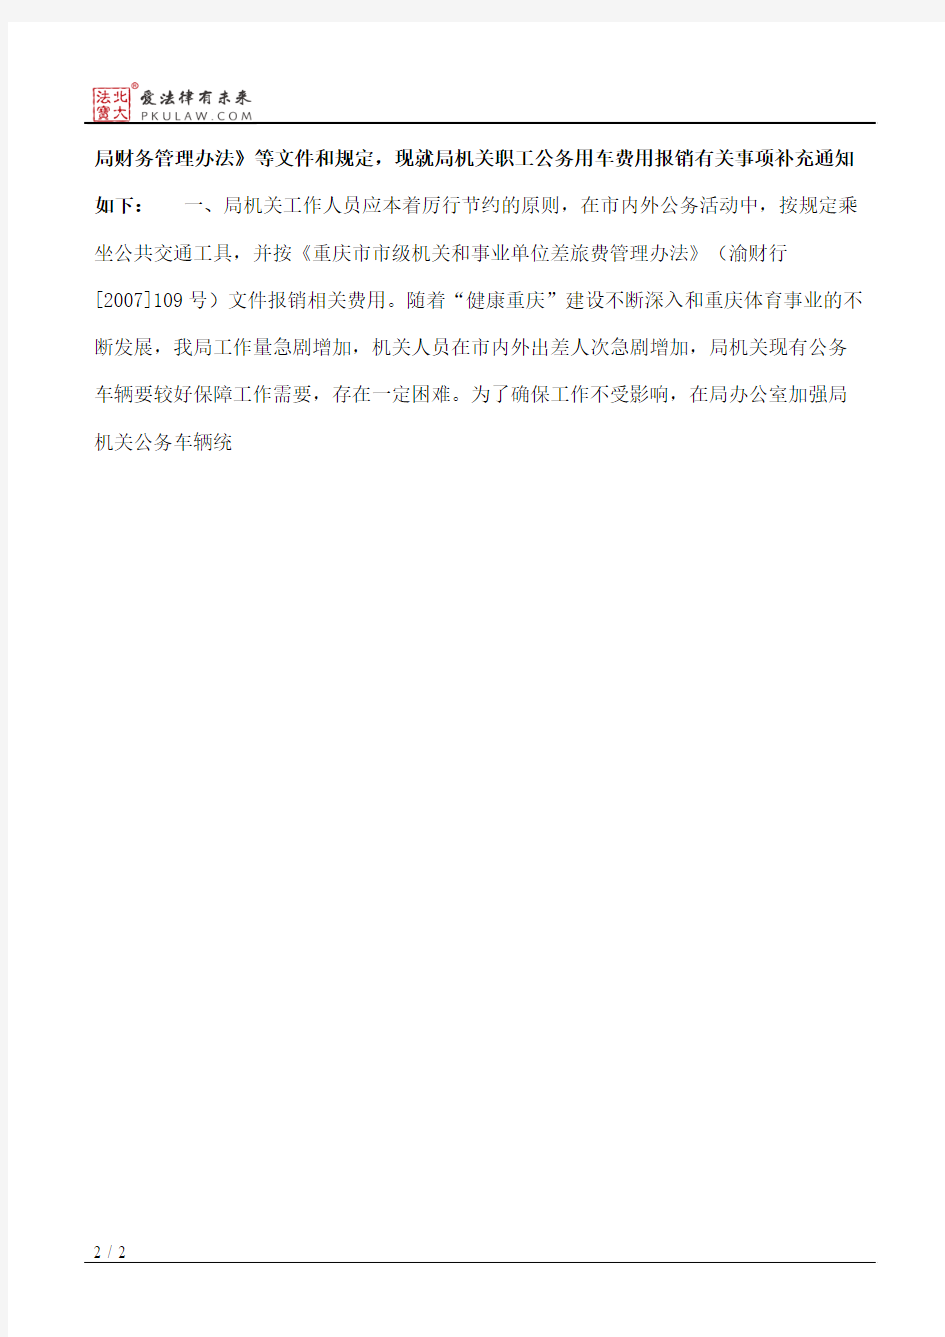 重庆市体育局关于进一步规范局机关职工公务用车费用报销有关事项